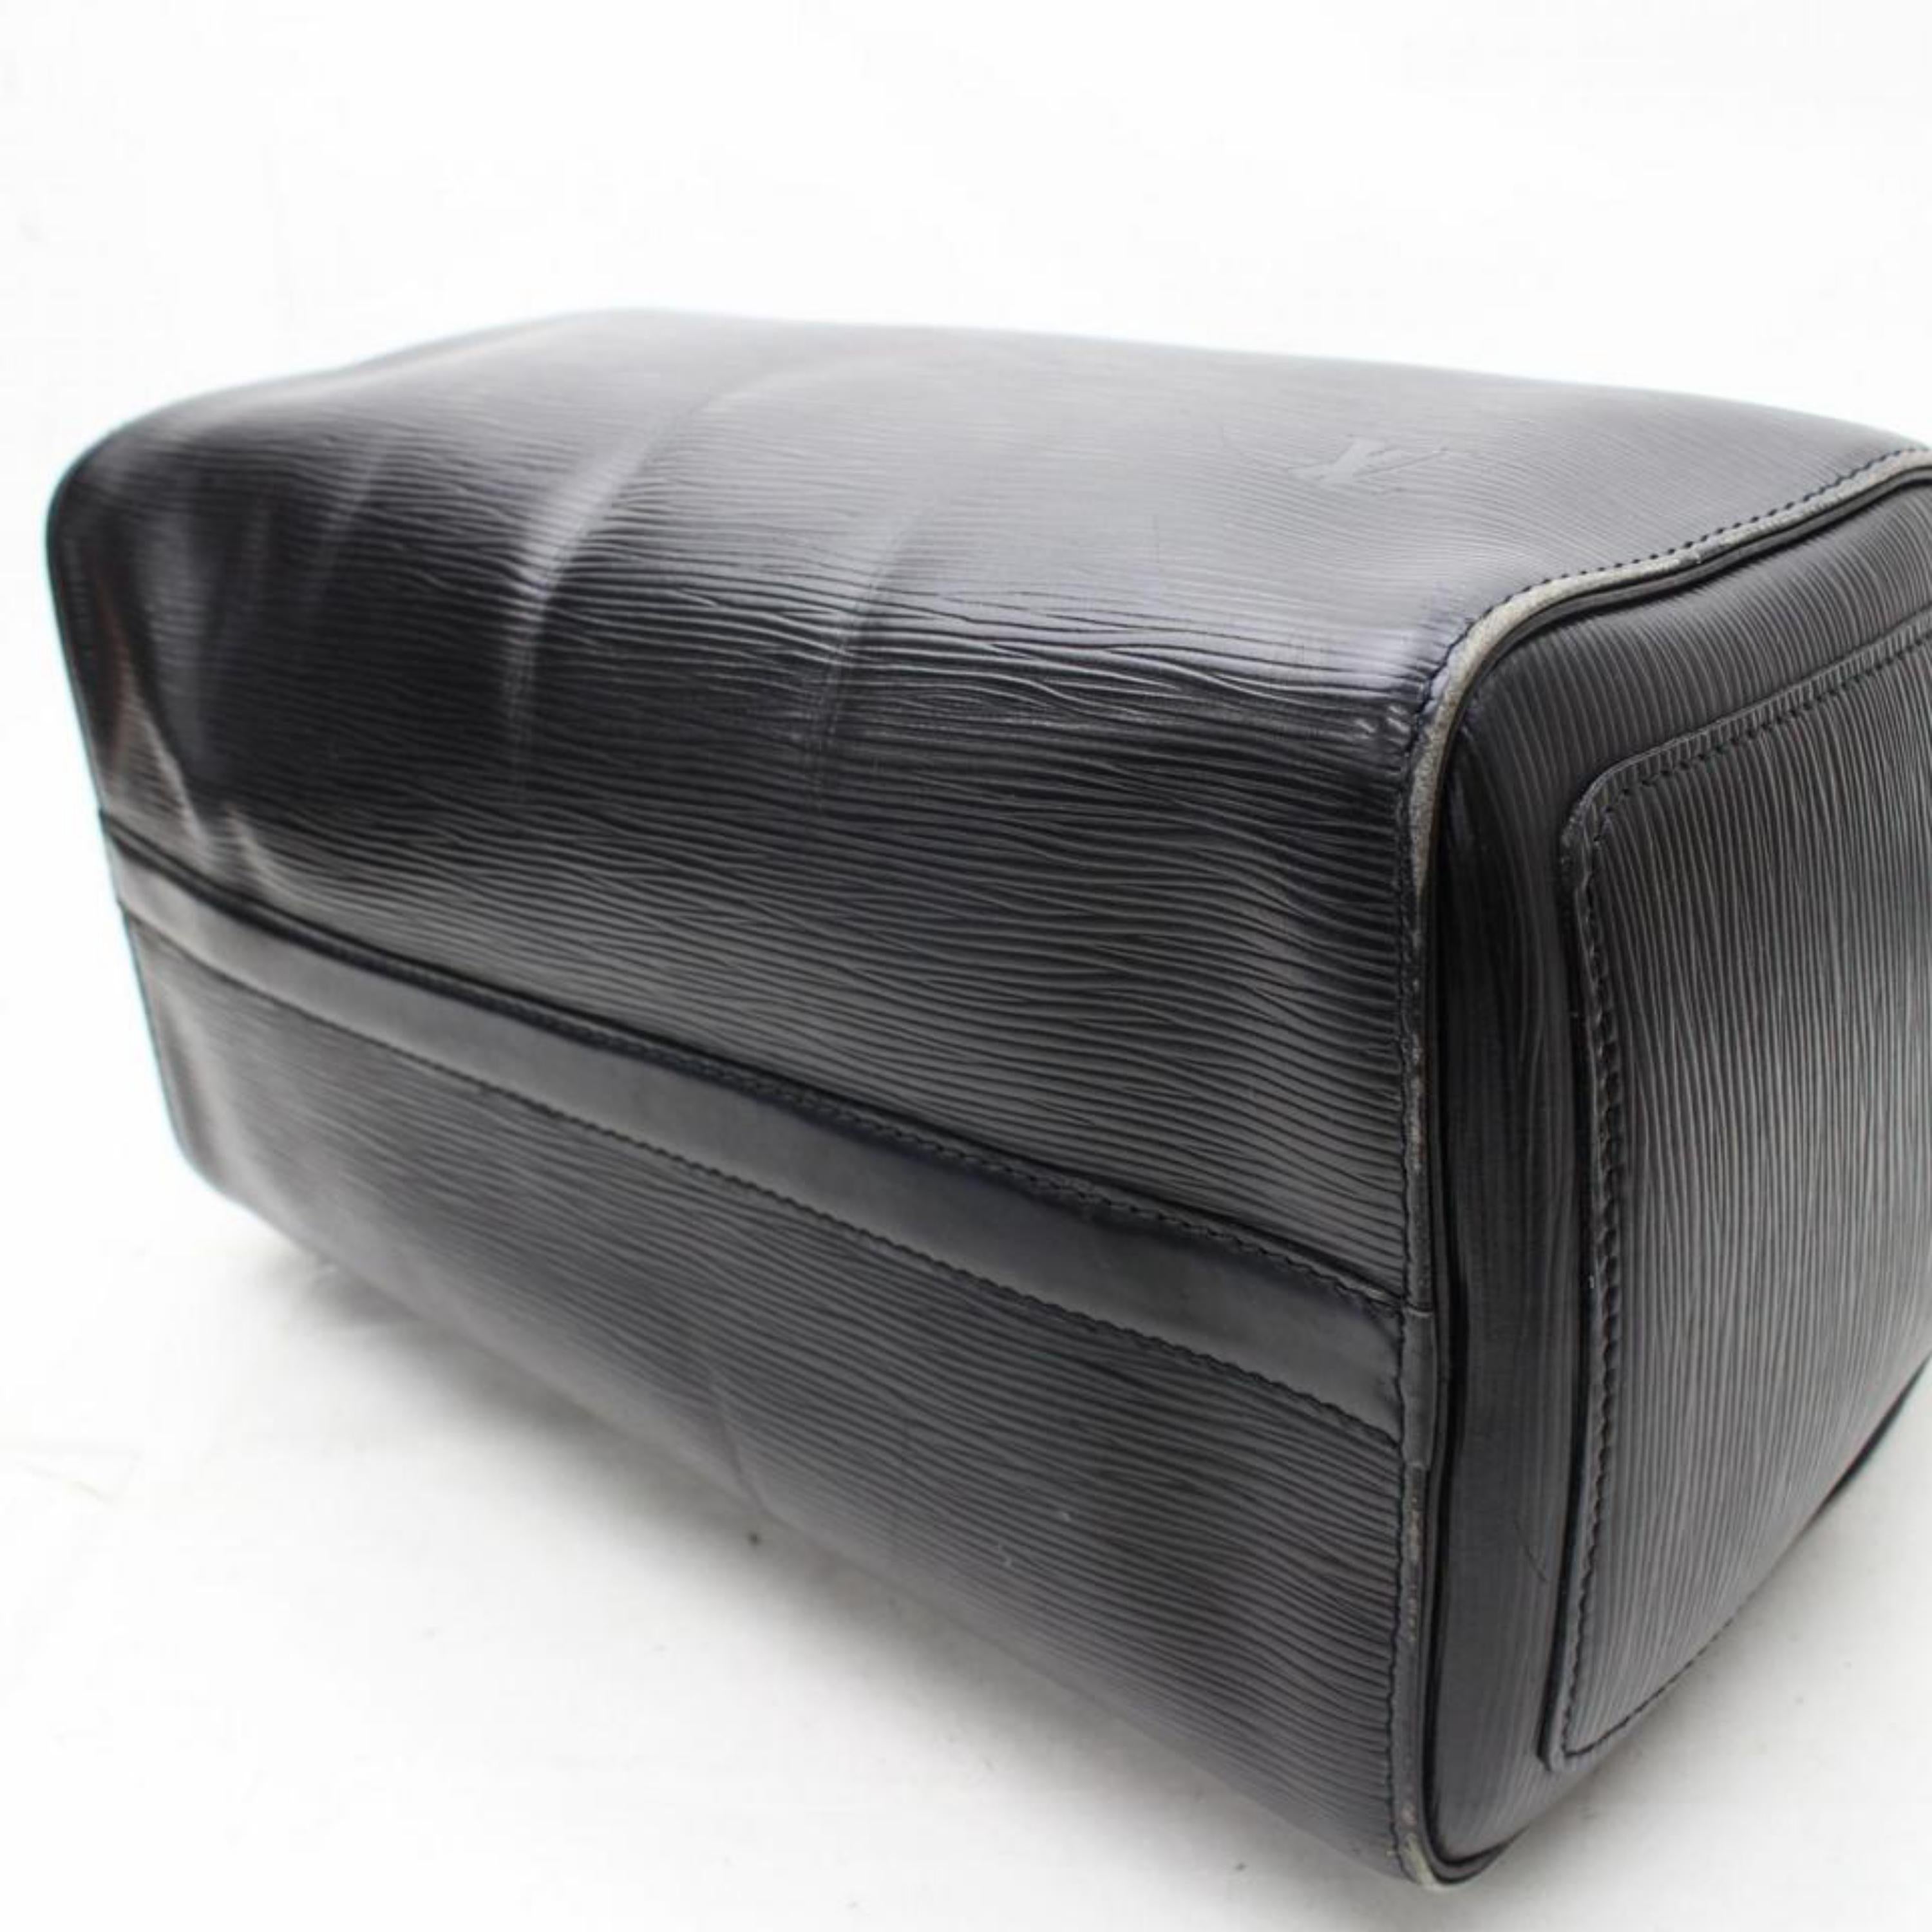 Louis Vuitton Speedy Epi Noir 30 867755 Black Leather Satchel For Sale 5